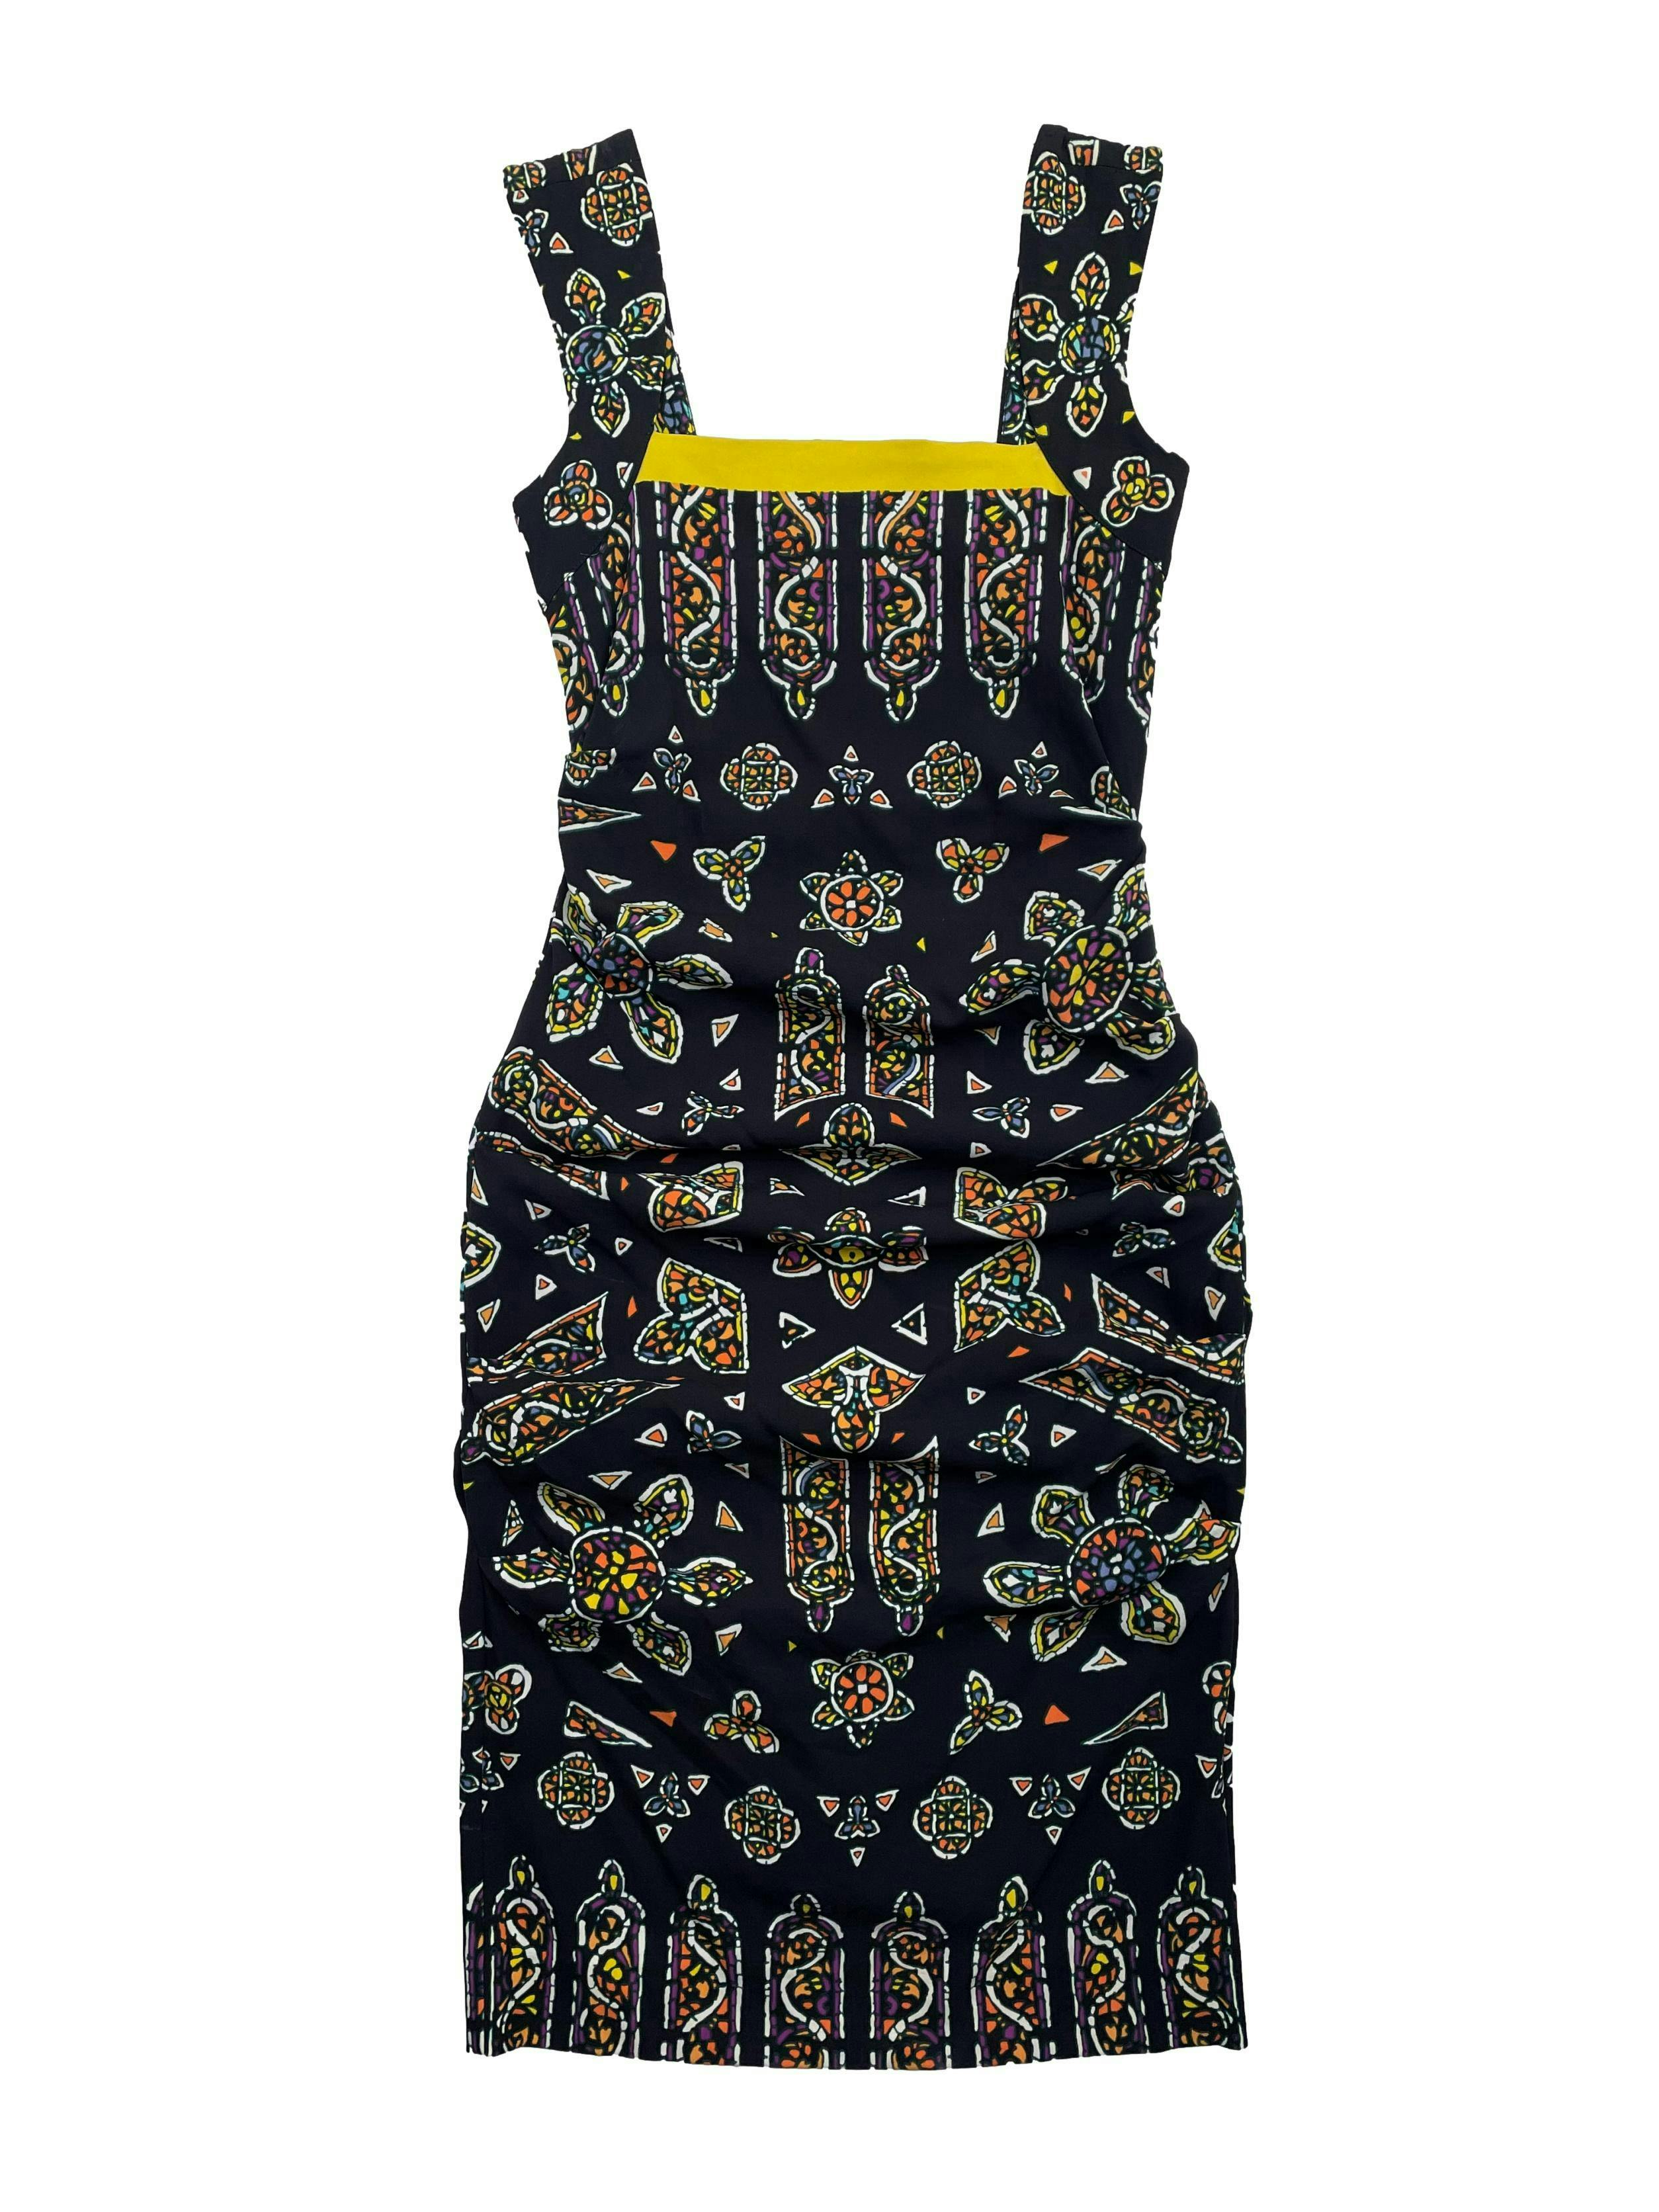 Vestido Nicole Miller (diseñadora inglesa) negro con print étnico y borde amarillo en el pecho, drapeado a los lados. Precio original USD 250 